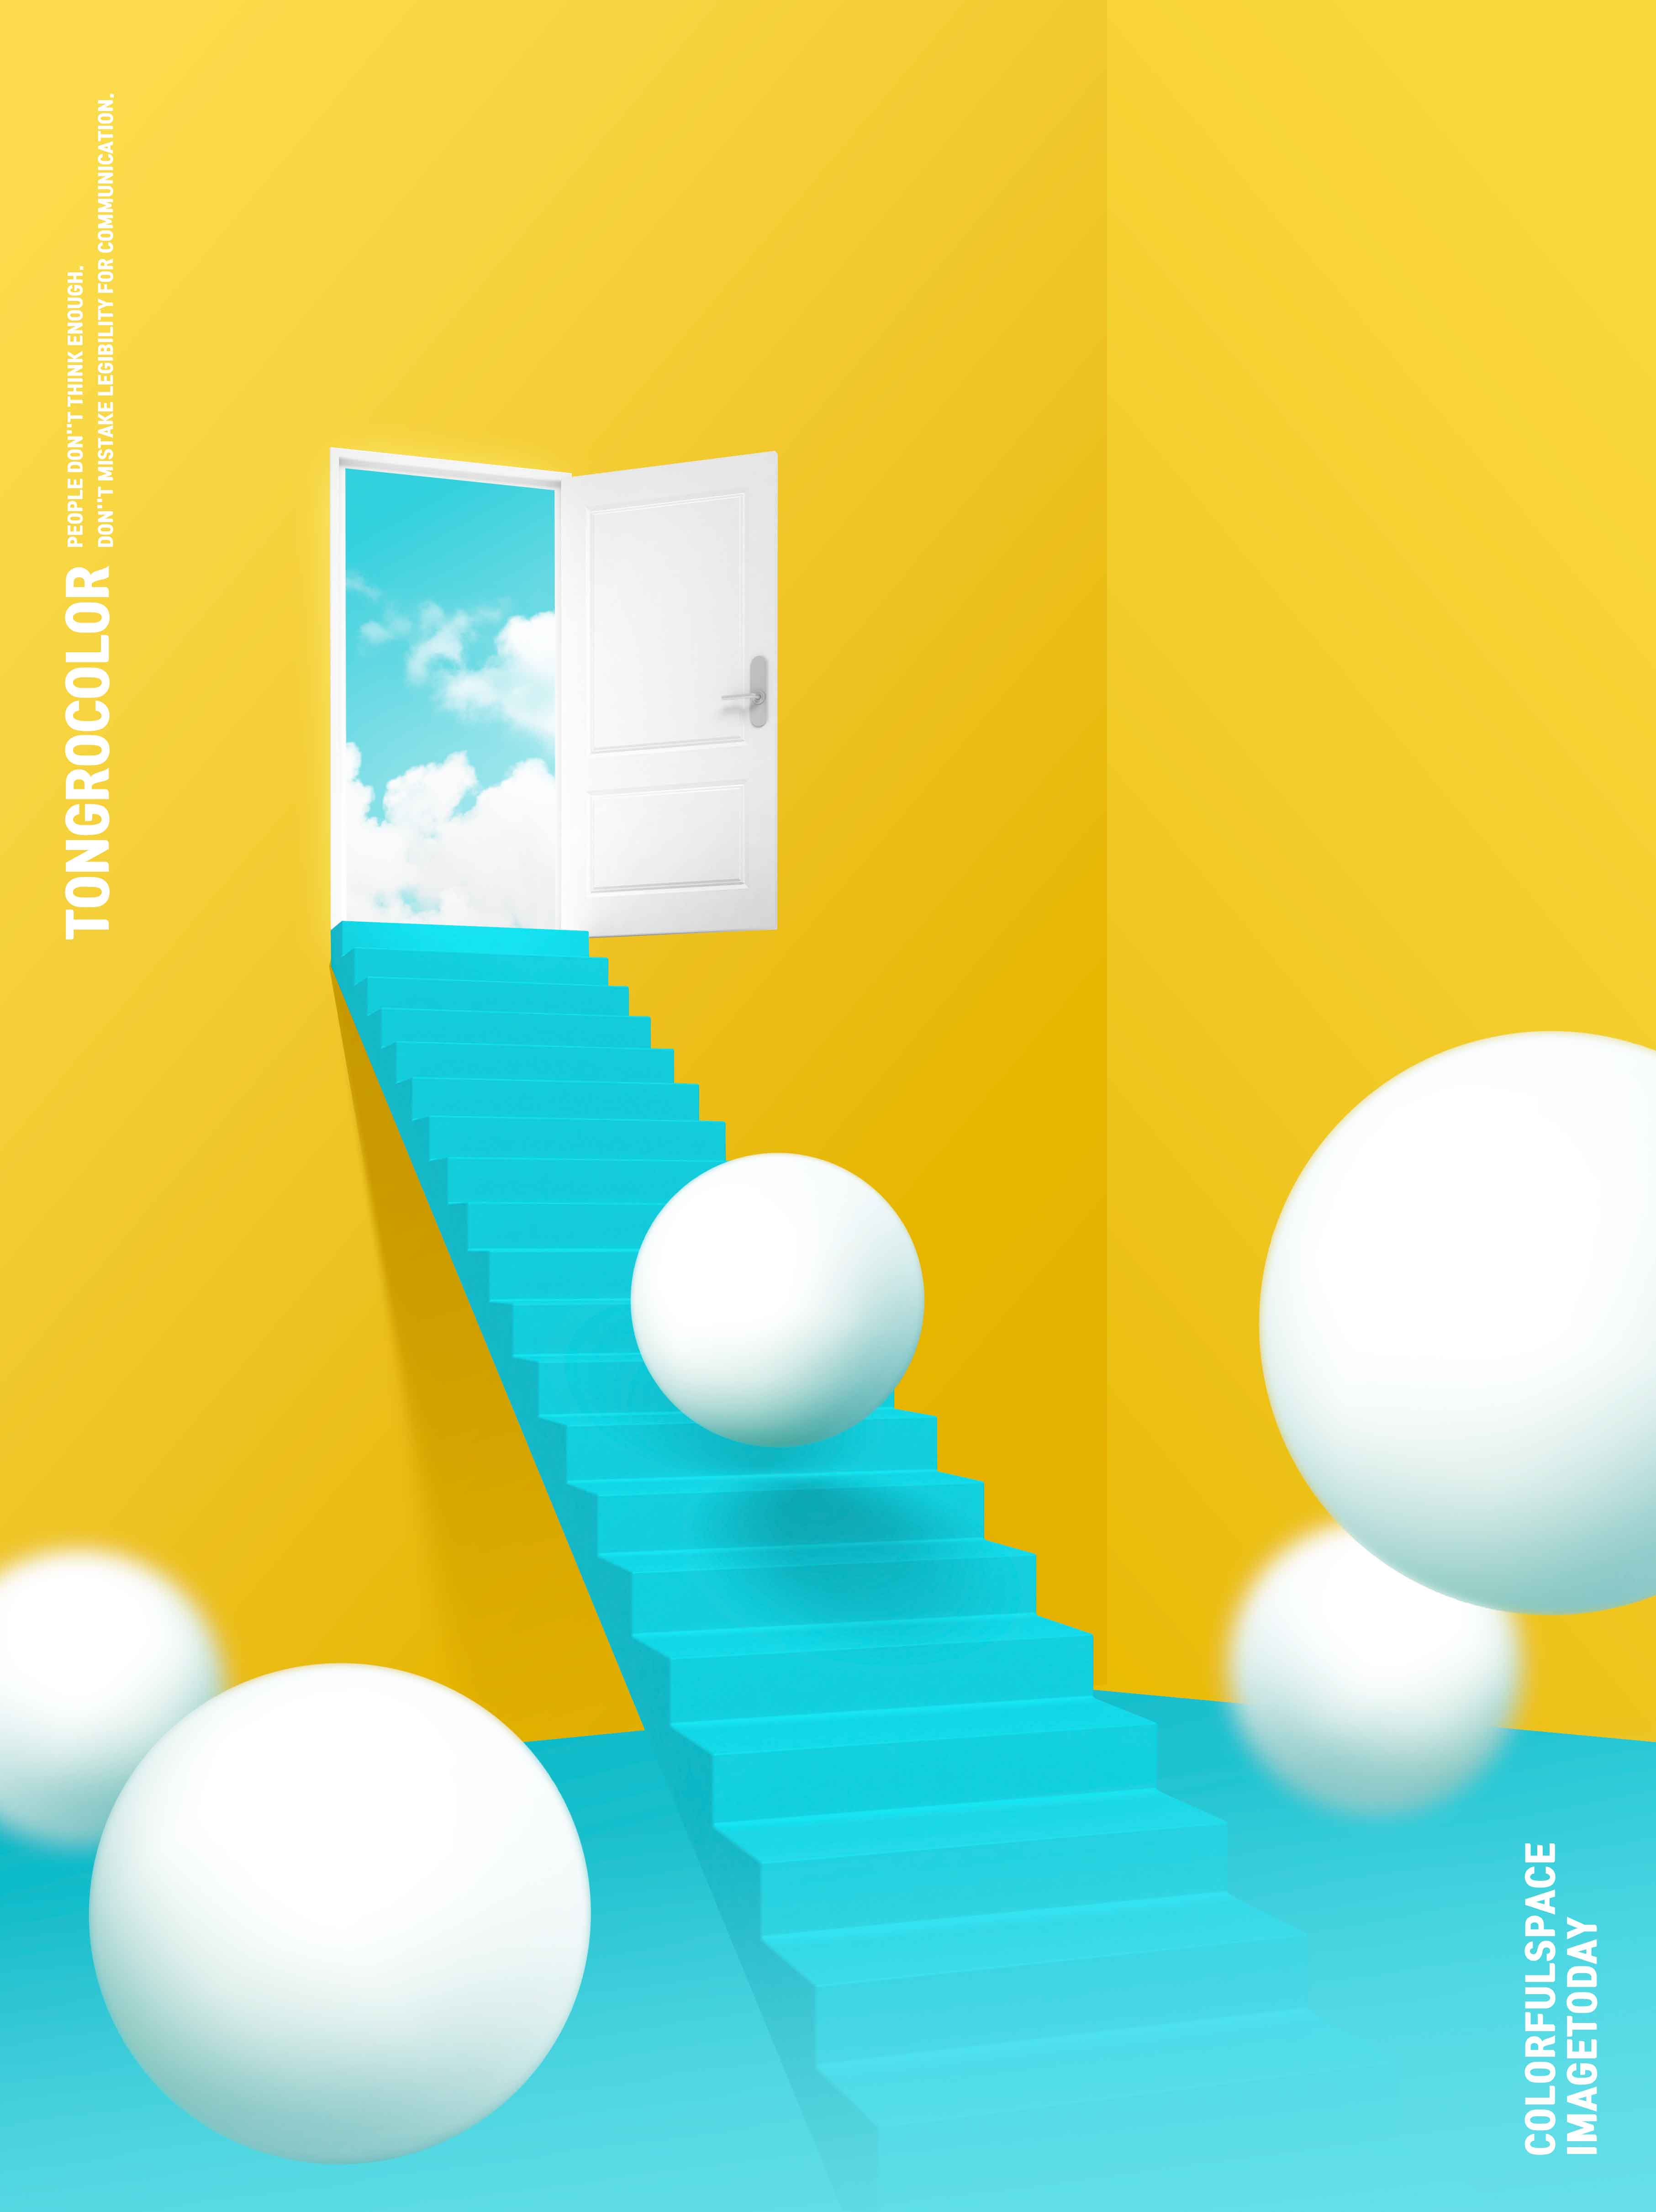 天堂阶梯抽象梦幻空间海报PSD素材蚂蚁素材精选psd素材插图